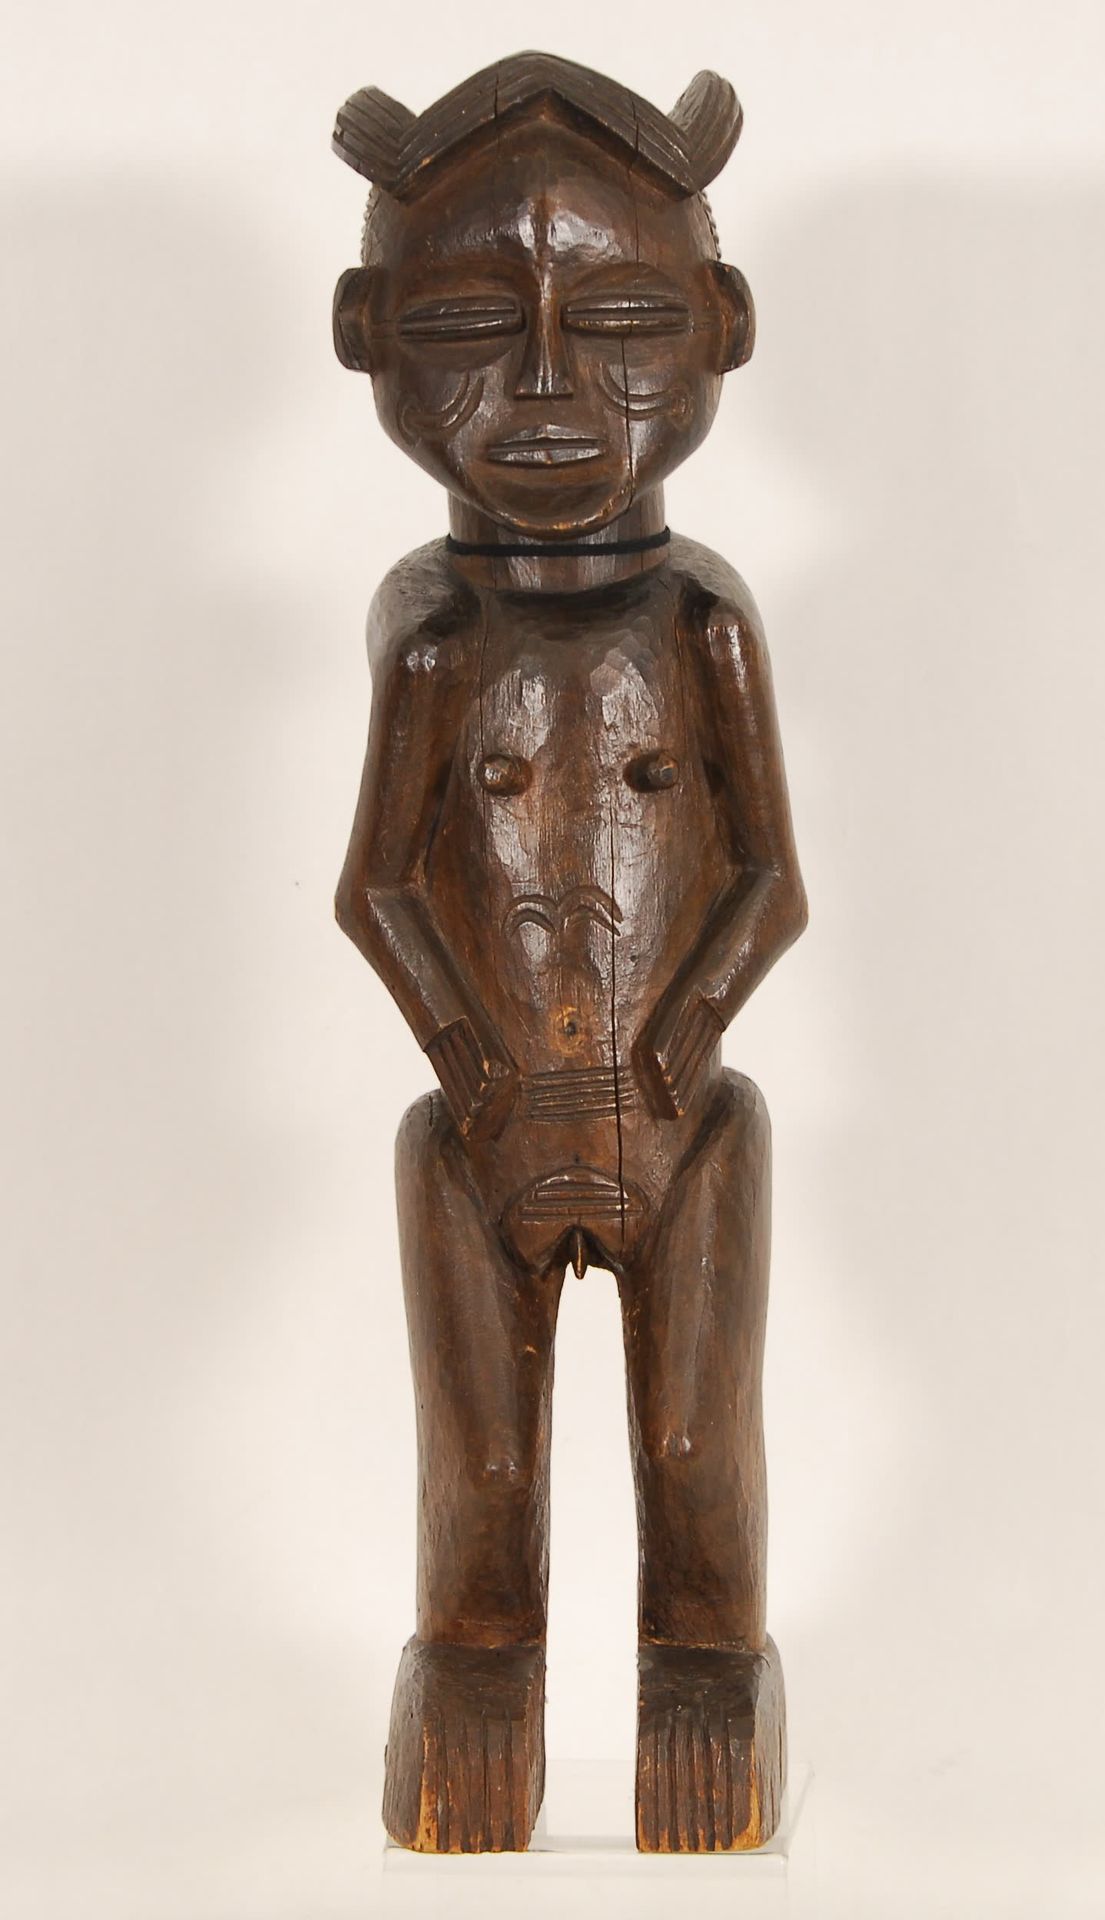 Afrique - Africa 雕像
木雕，安哥拉。
，高48厘米。